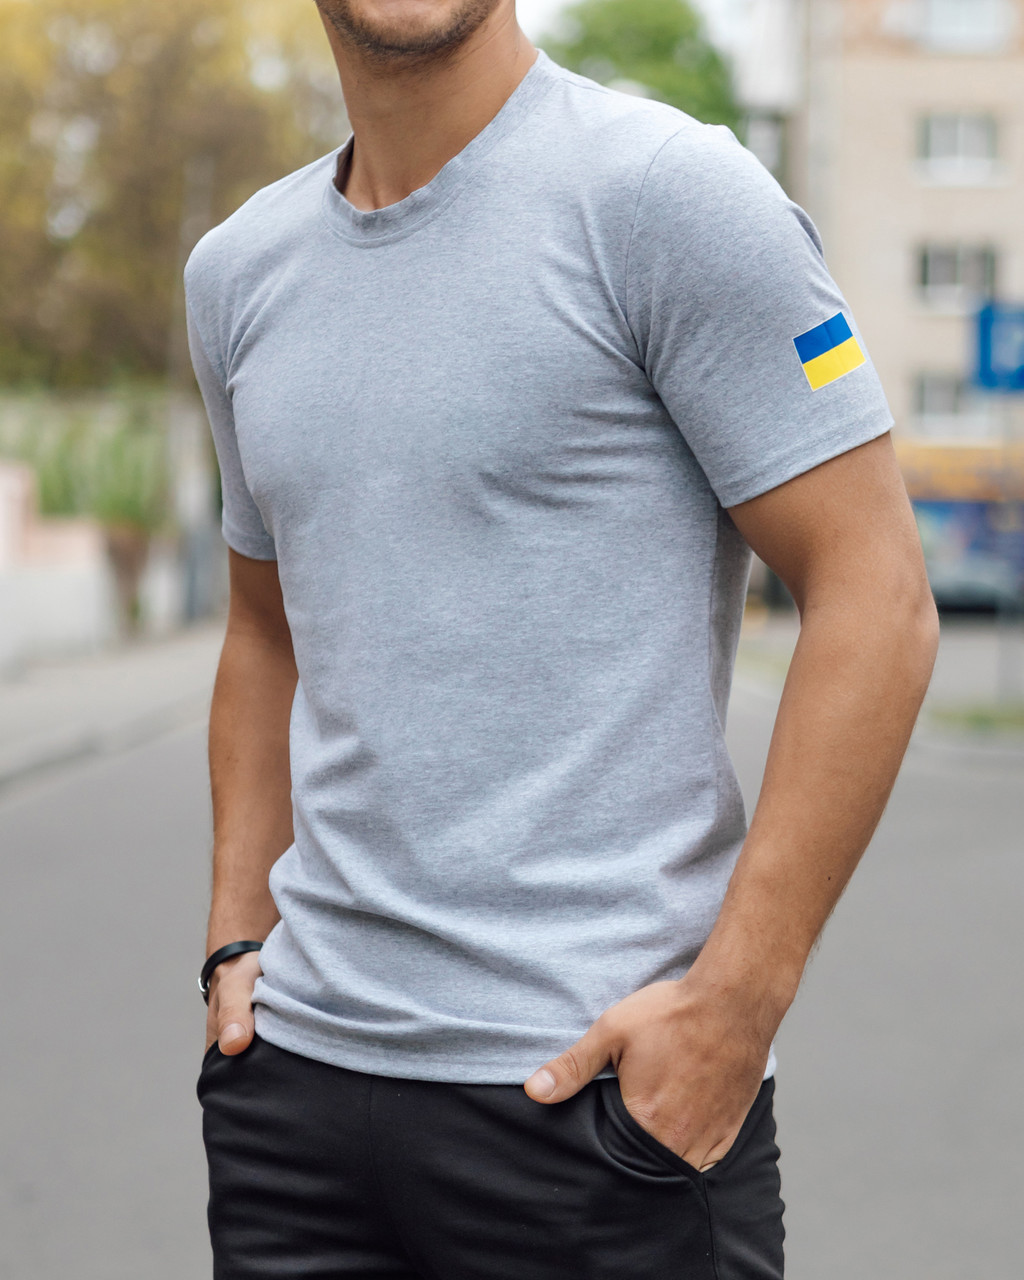 Чоловіча футболка патріотична однотонна з прапором України на плечі сіра Розміри: від S до 3XL